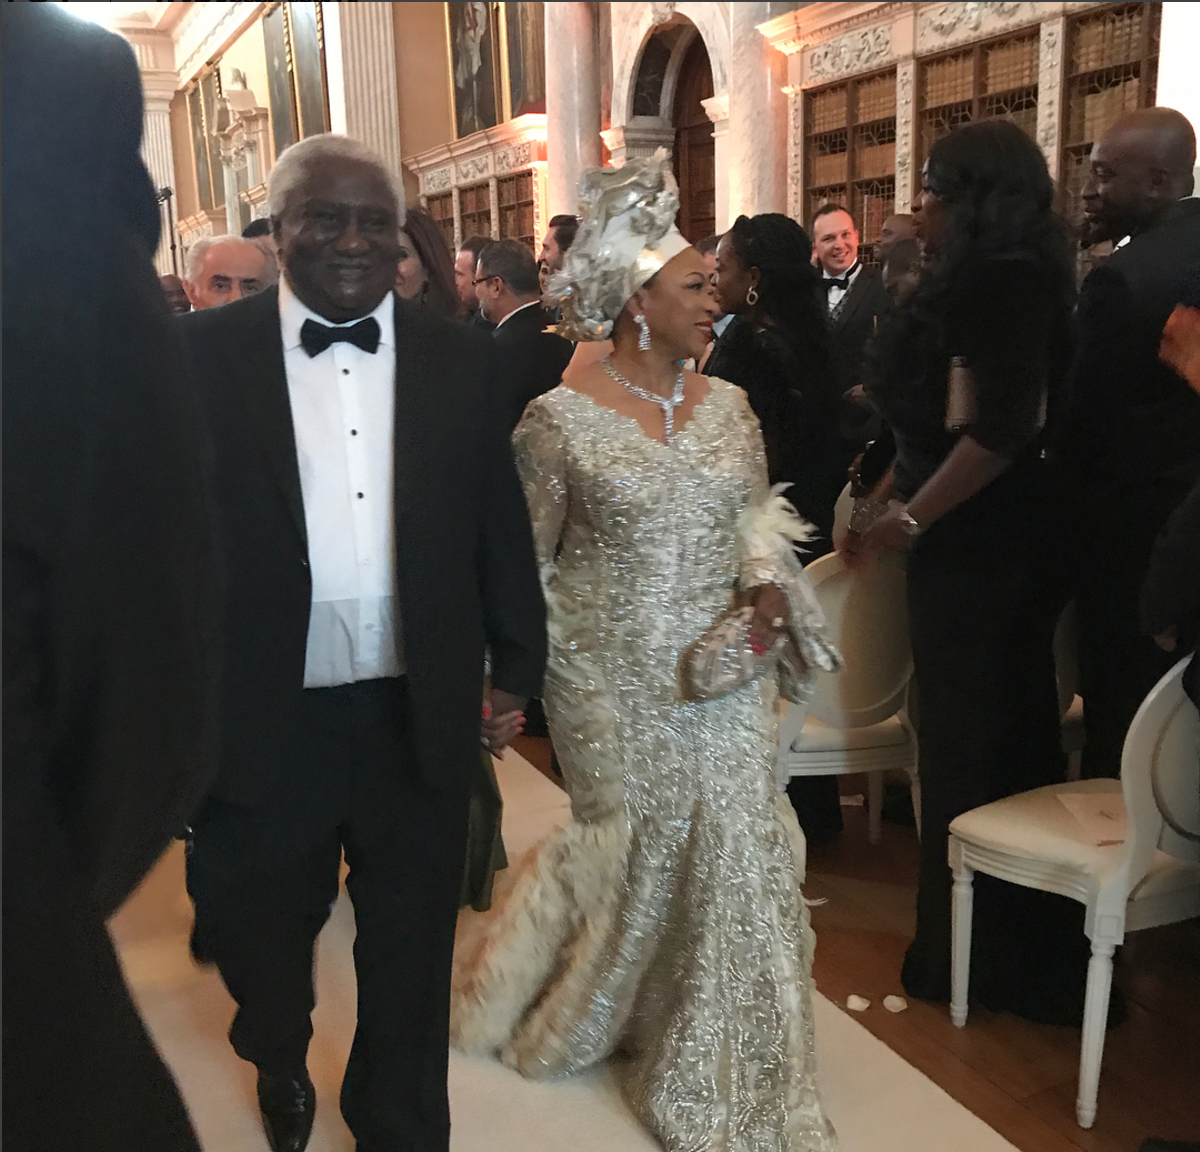 
Folarin là một trong 4 người con của nữ tỷ phú 66 tuổi - Folorunsho Alakija. Với tài sản ước tính 2,1 tỷ USD (47.670 tỷ đồng), bà được Forbes xếp hạng giàu thứ 14 ở châu Phi và là người phụ nữ da đen giàu nhất Nigeria. Bà Alakija cũng từng xếp hạng 80 trong danh sách Phụ nữ quyền lực nhất thế giới.